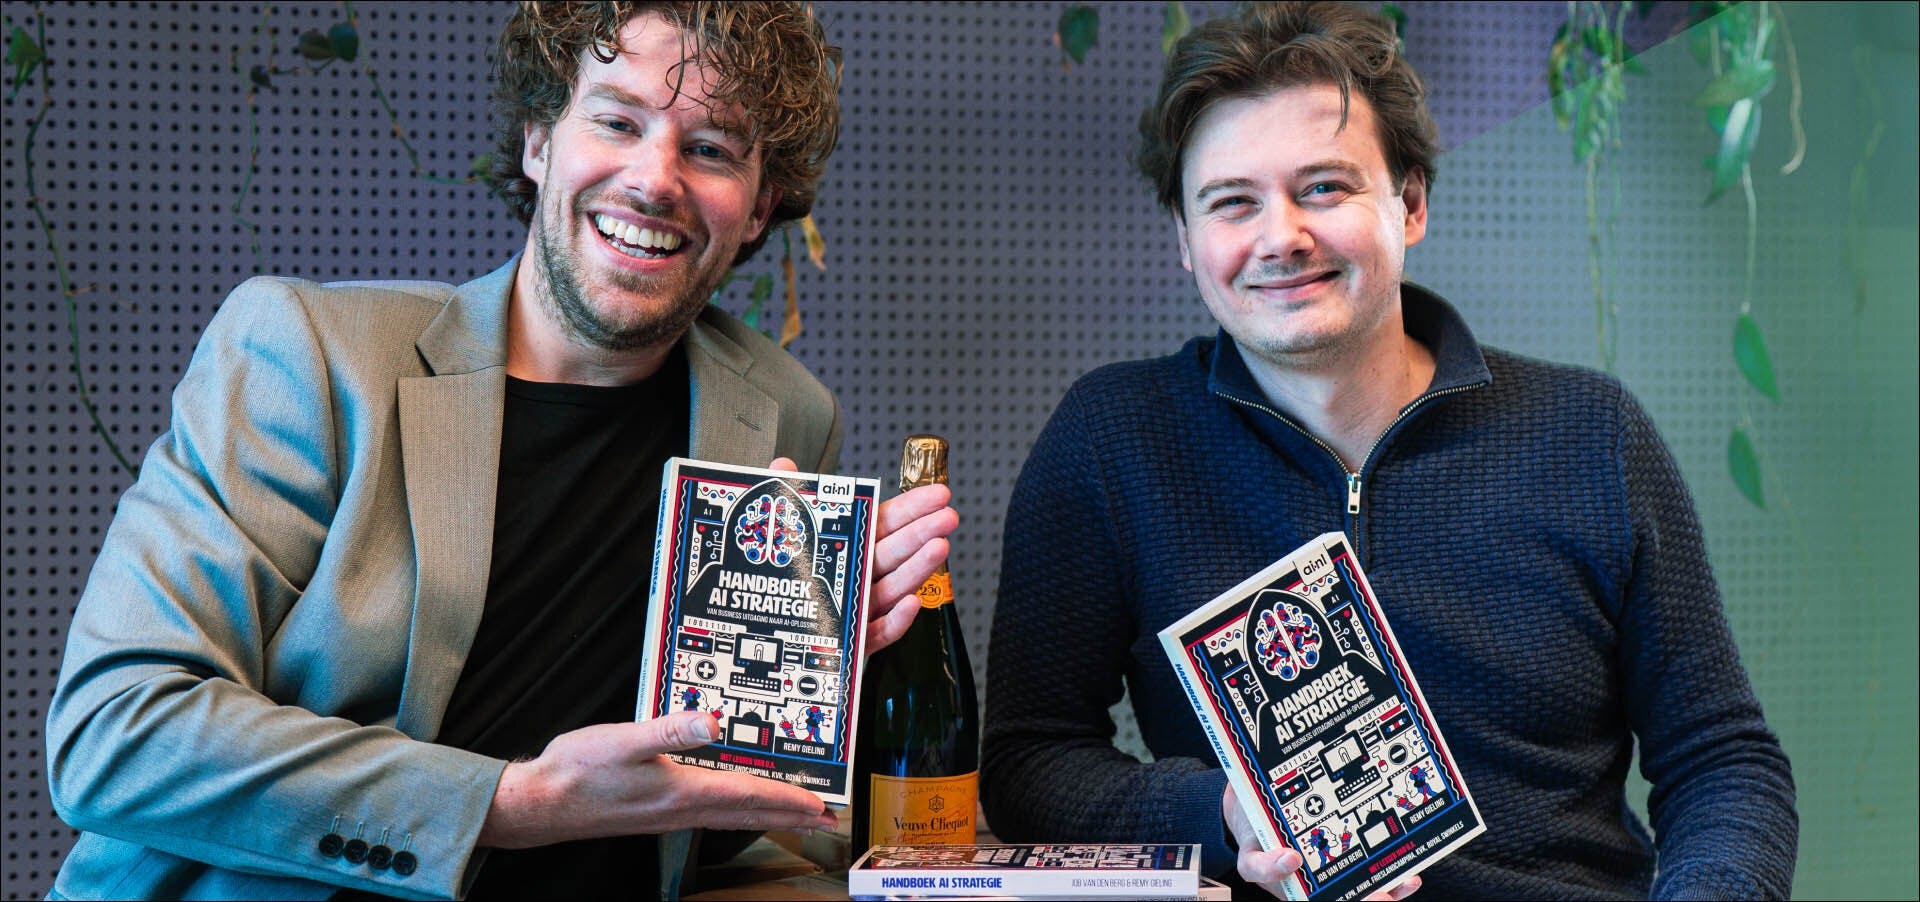 Job van den Berg en Remy Gieling glimlachend met boek in handen